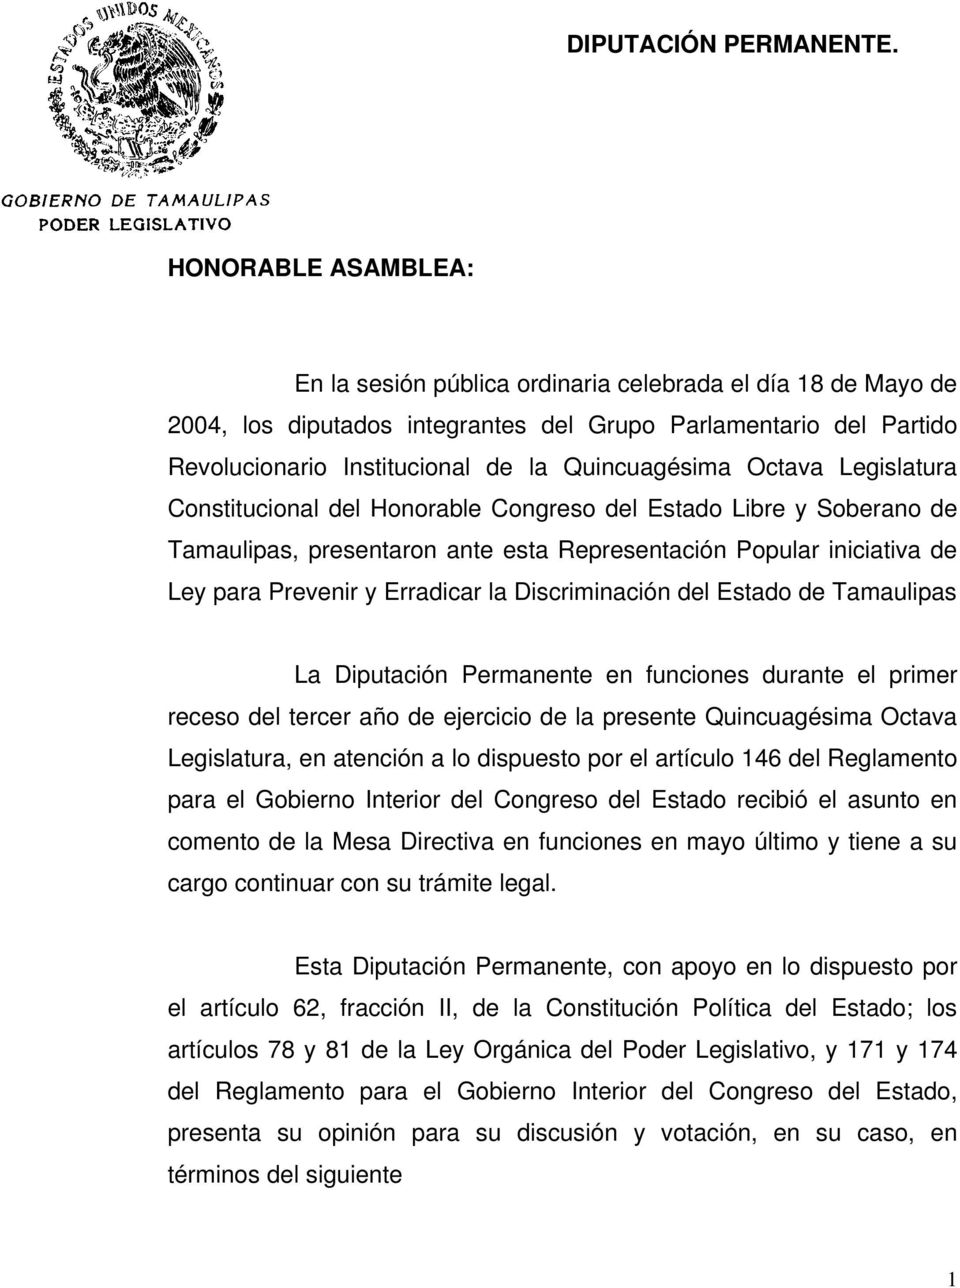 Octava Legislatura Constitucional del Honorable Congreso del Estado Libre y Soberano de Tamaulipas, presentaron ante esta Representación Popular iniciativa de Ley para Prevenir y Erradicar la